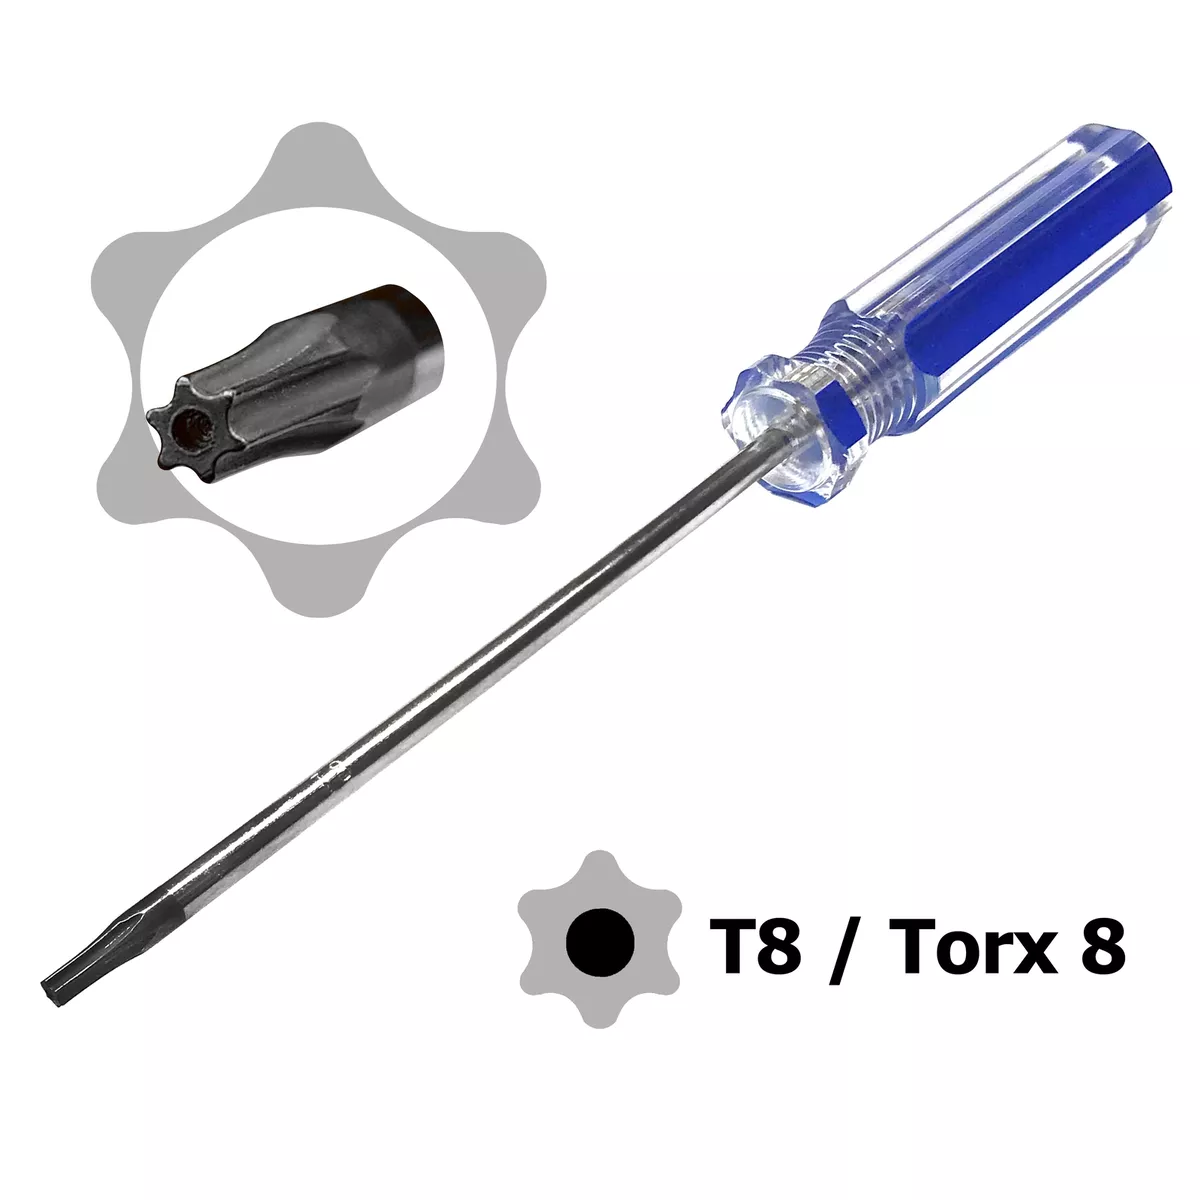 Schraubendreher Torx T8 für PS 4 Xbox 360 GEHÄUSE ÖFFNEN SPEZIAL WERKZEUG  +LOCH